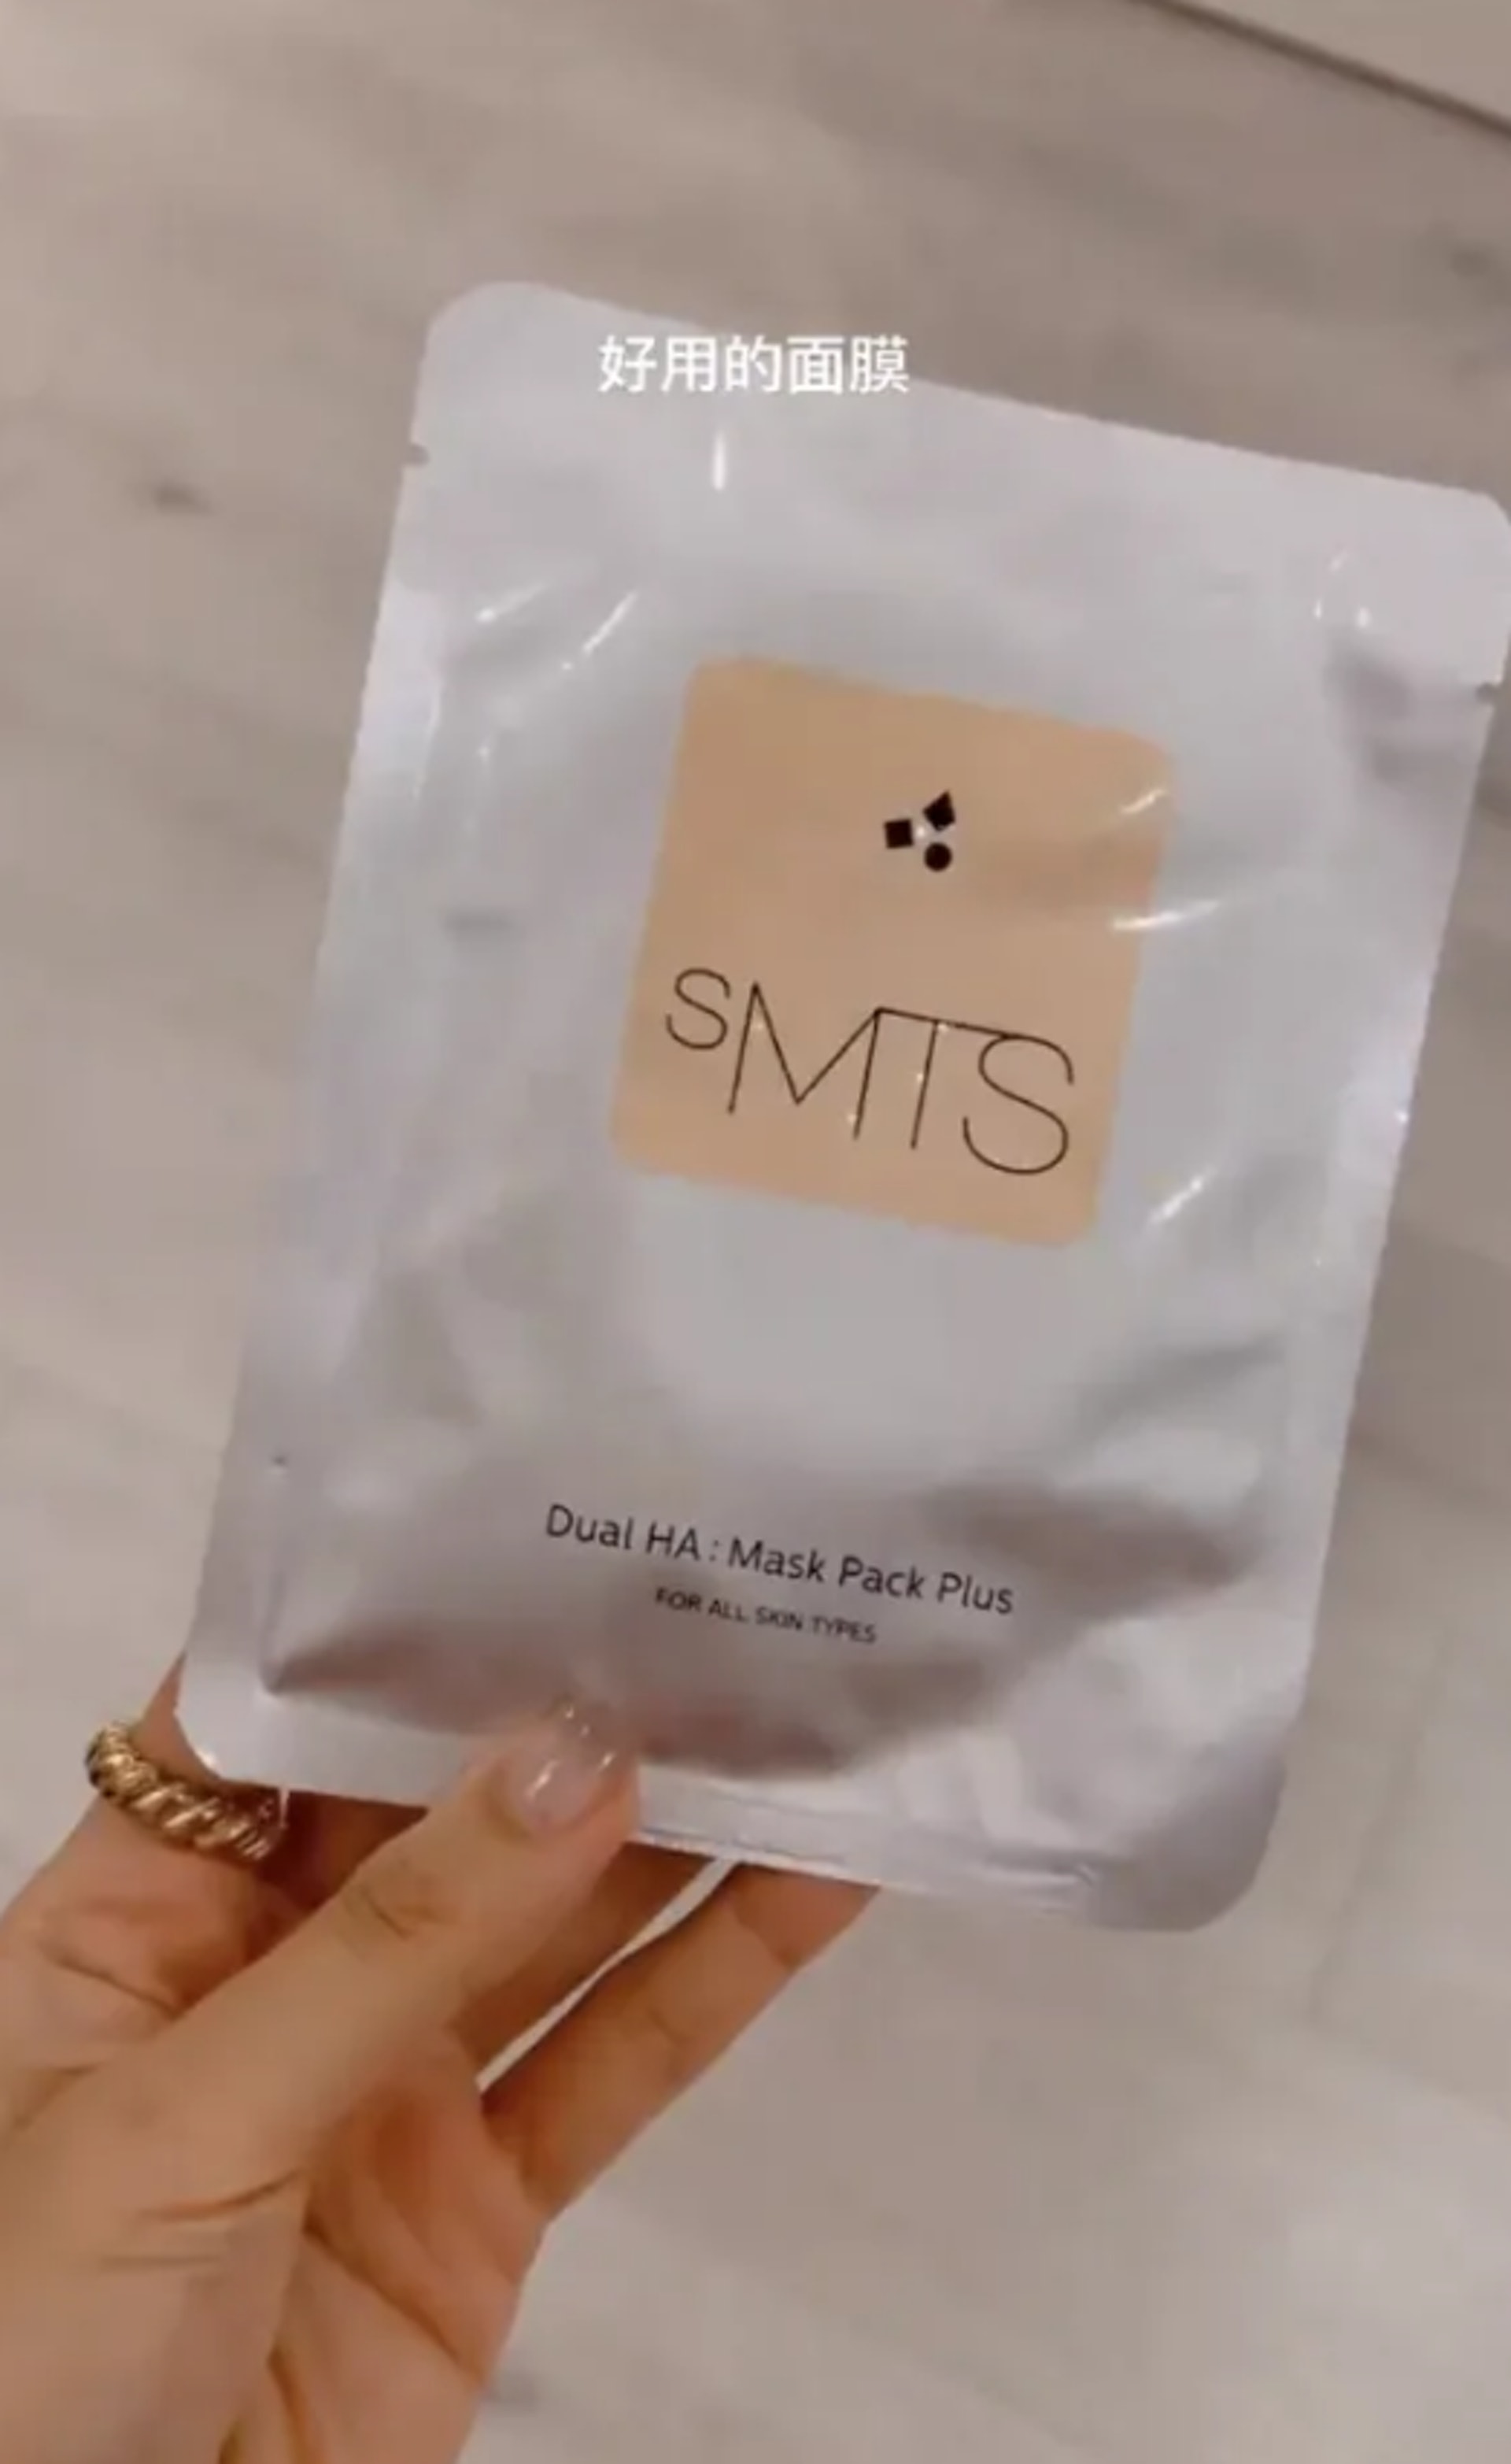 SMTS Dual HA Mask Pack Plus由8種保濕胺基酸形成，加上透明質酸，讓肌膚細胞直接吸收，迅速補水。